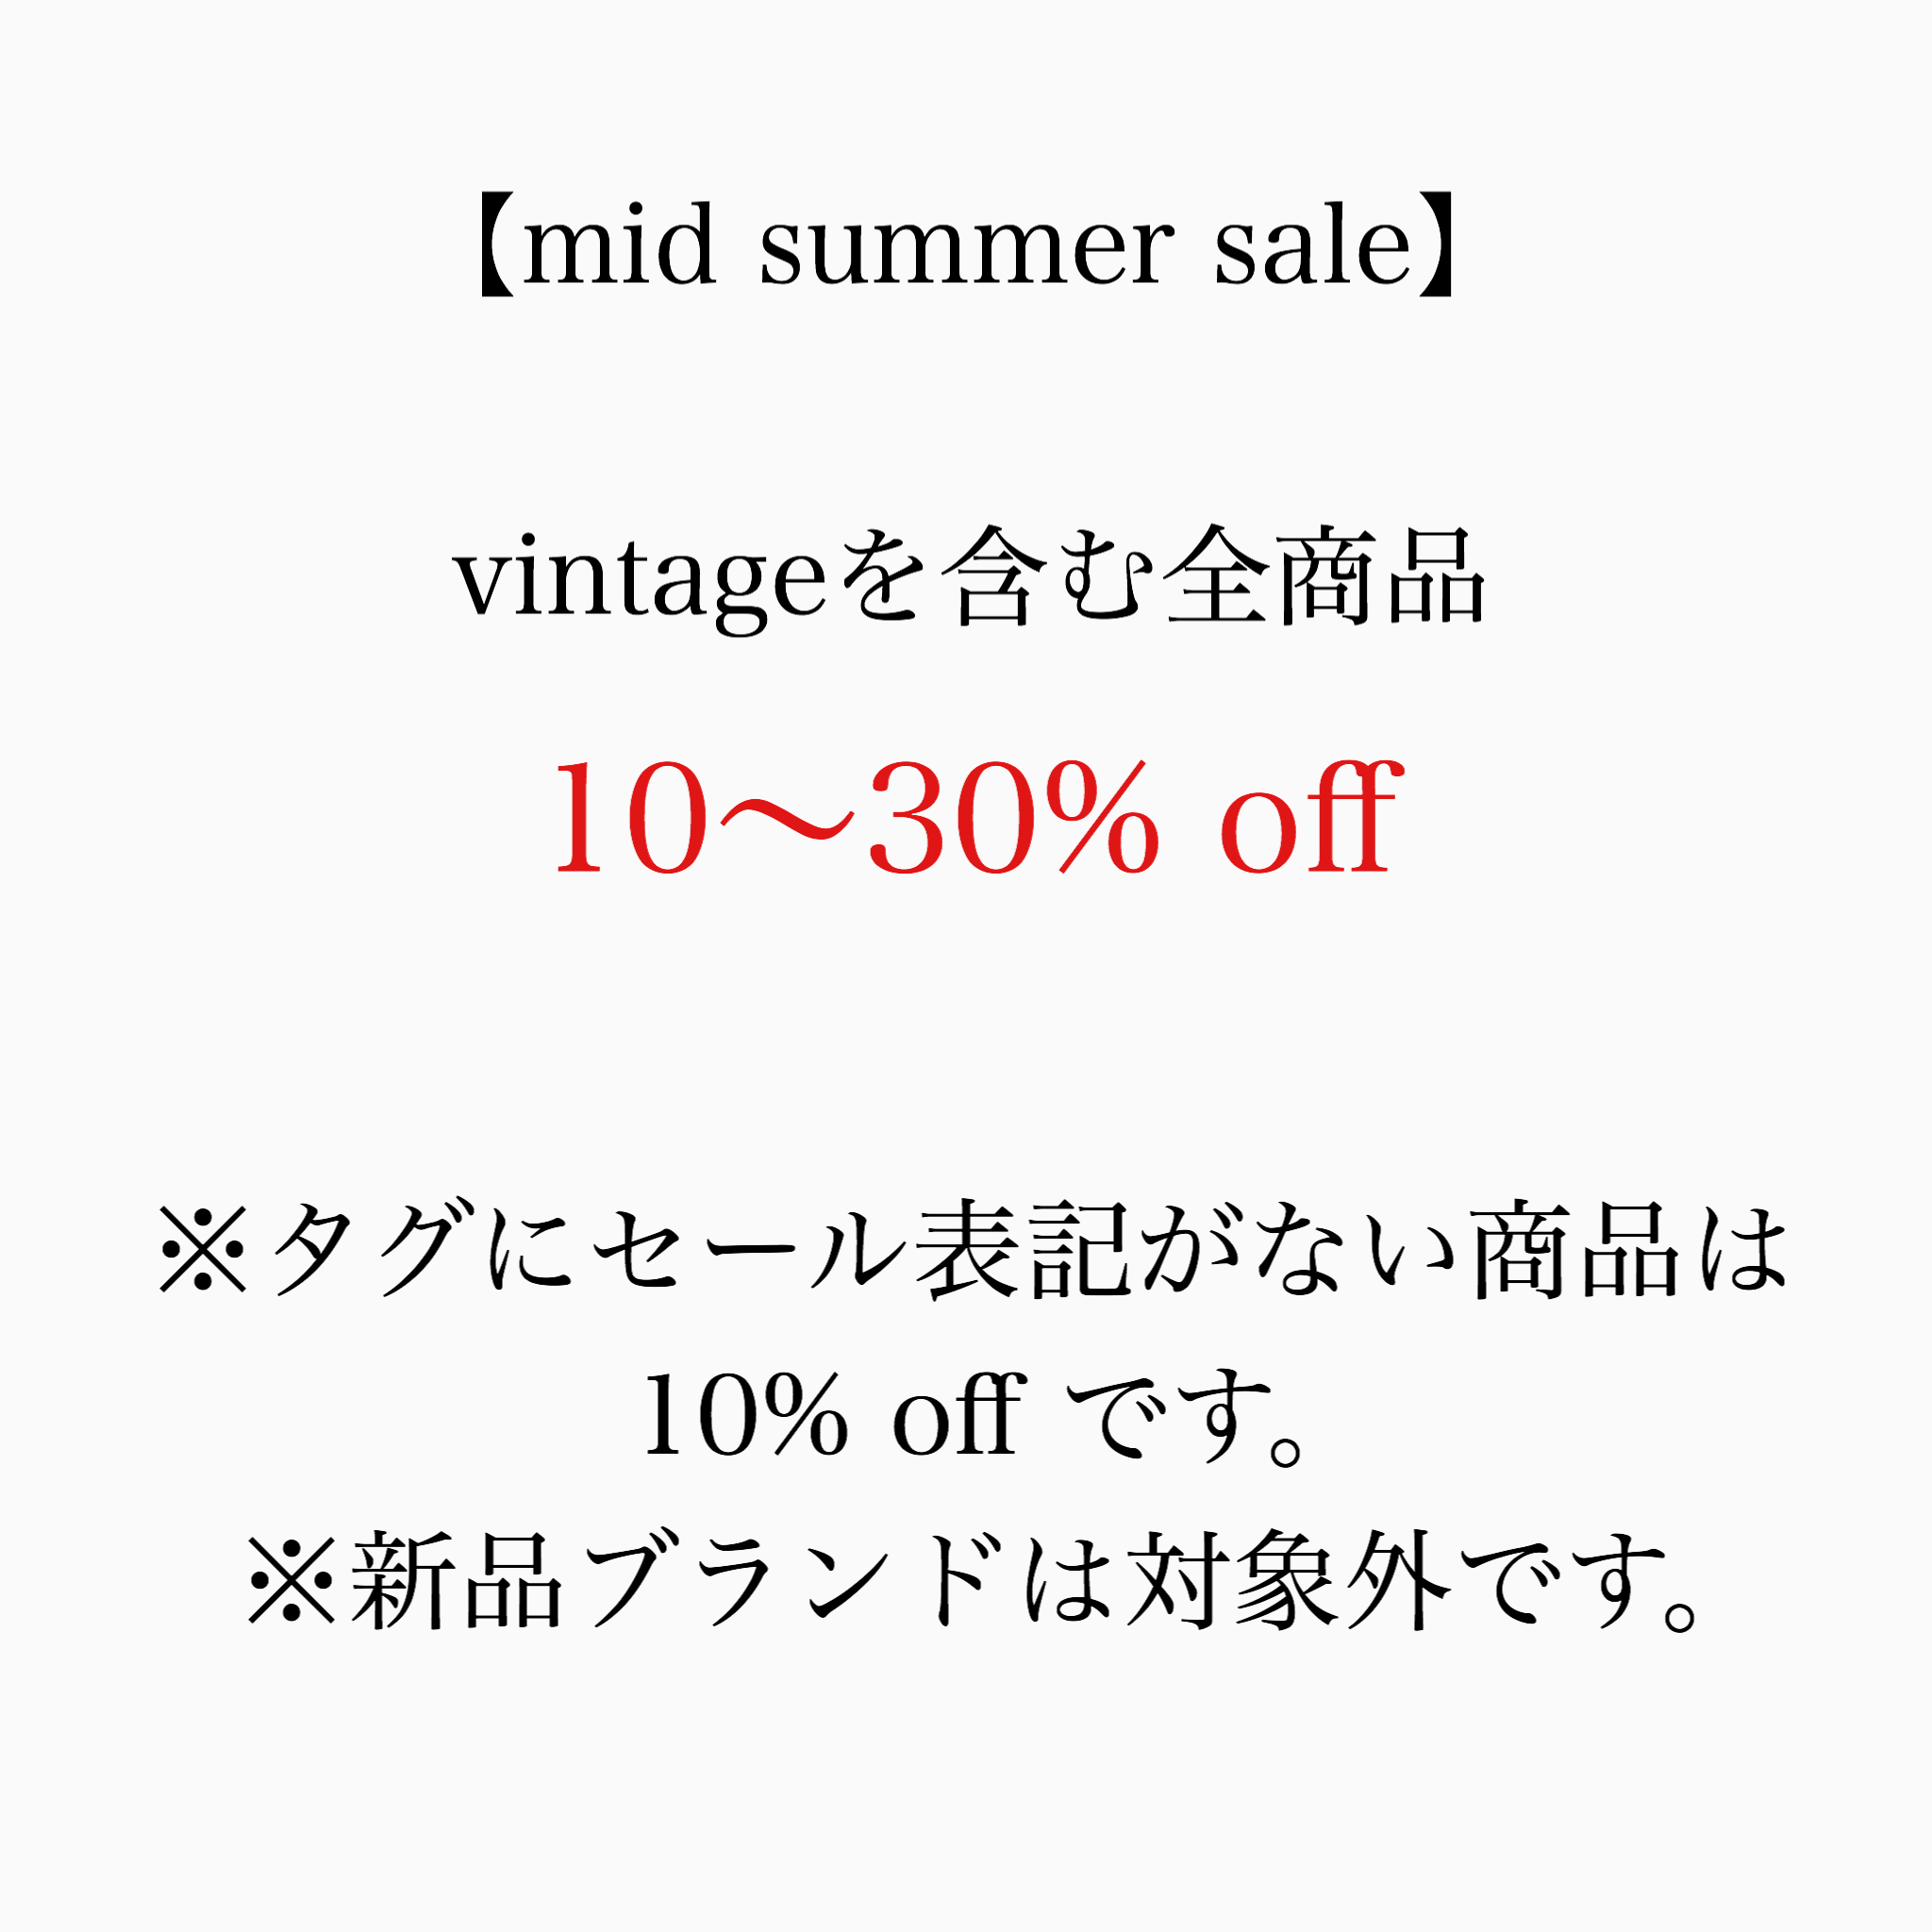 mid summer saleは今週で終了です。